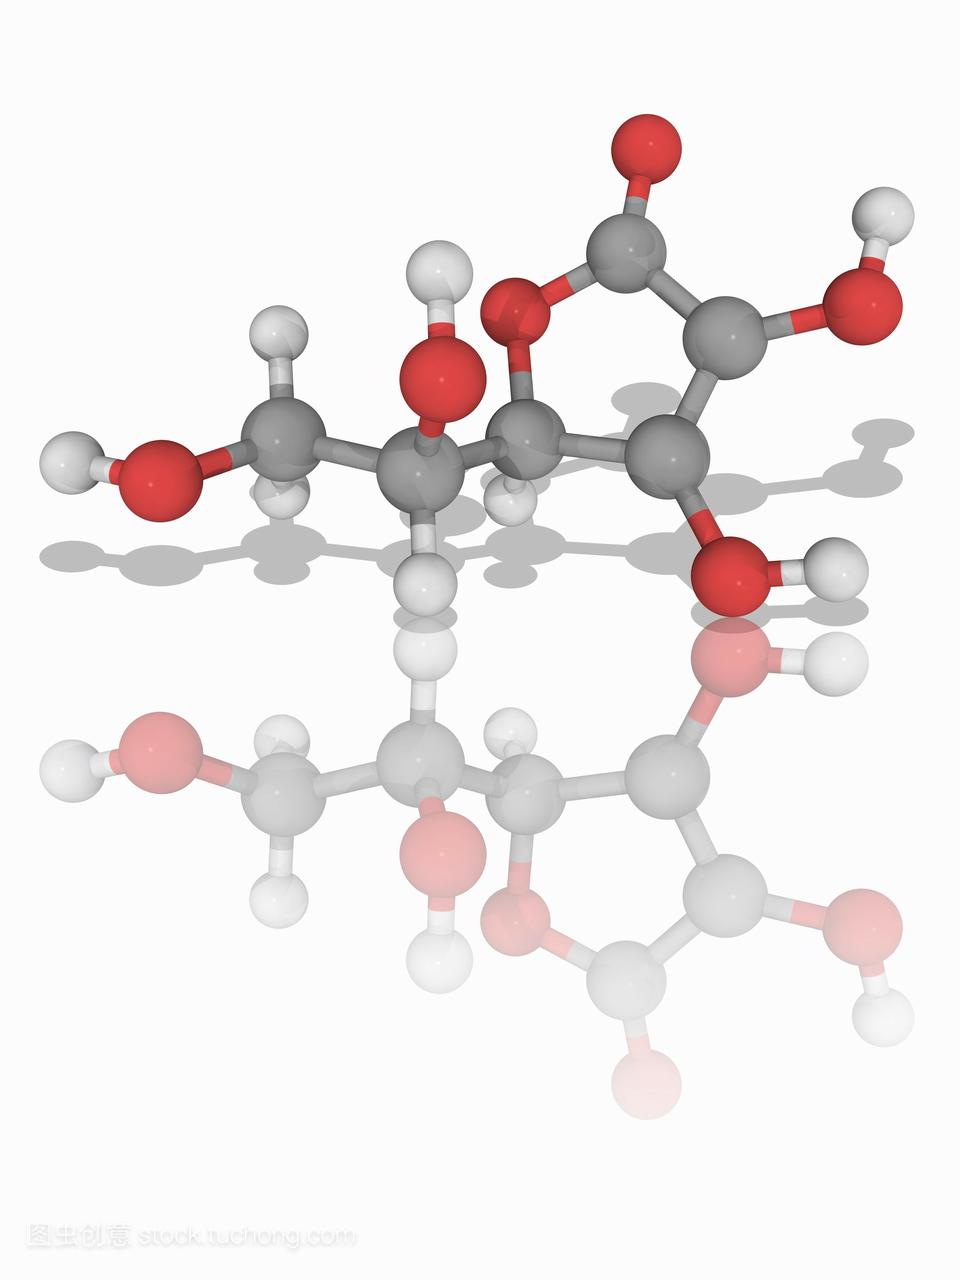 维生素c抗坏血酸的分子模型c6h8o6,也称维生素